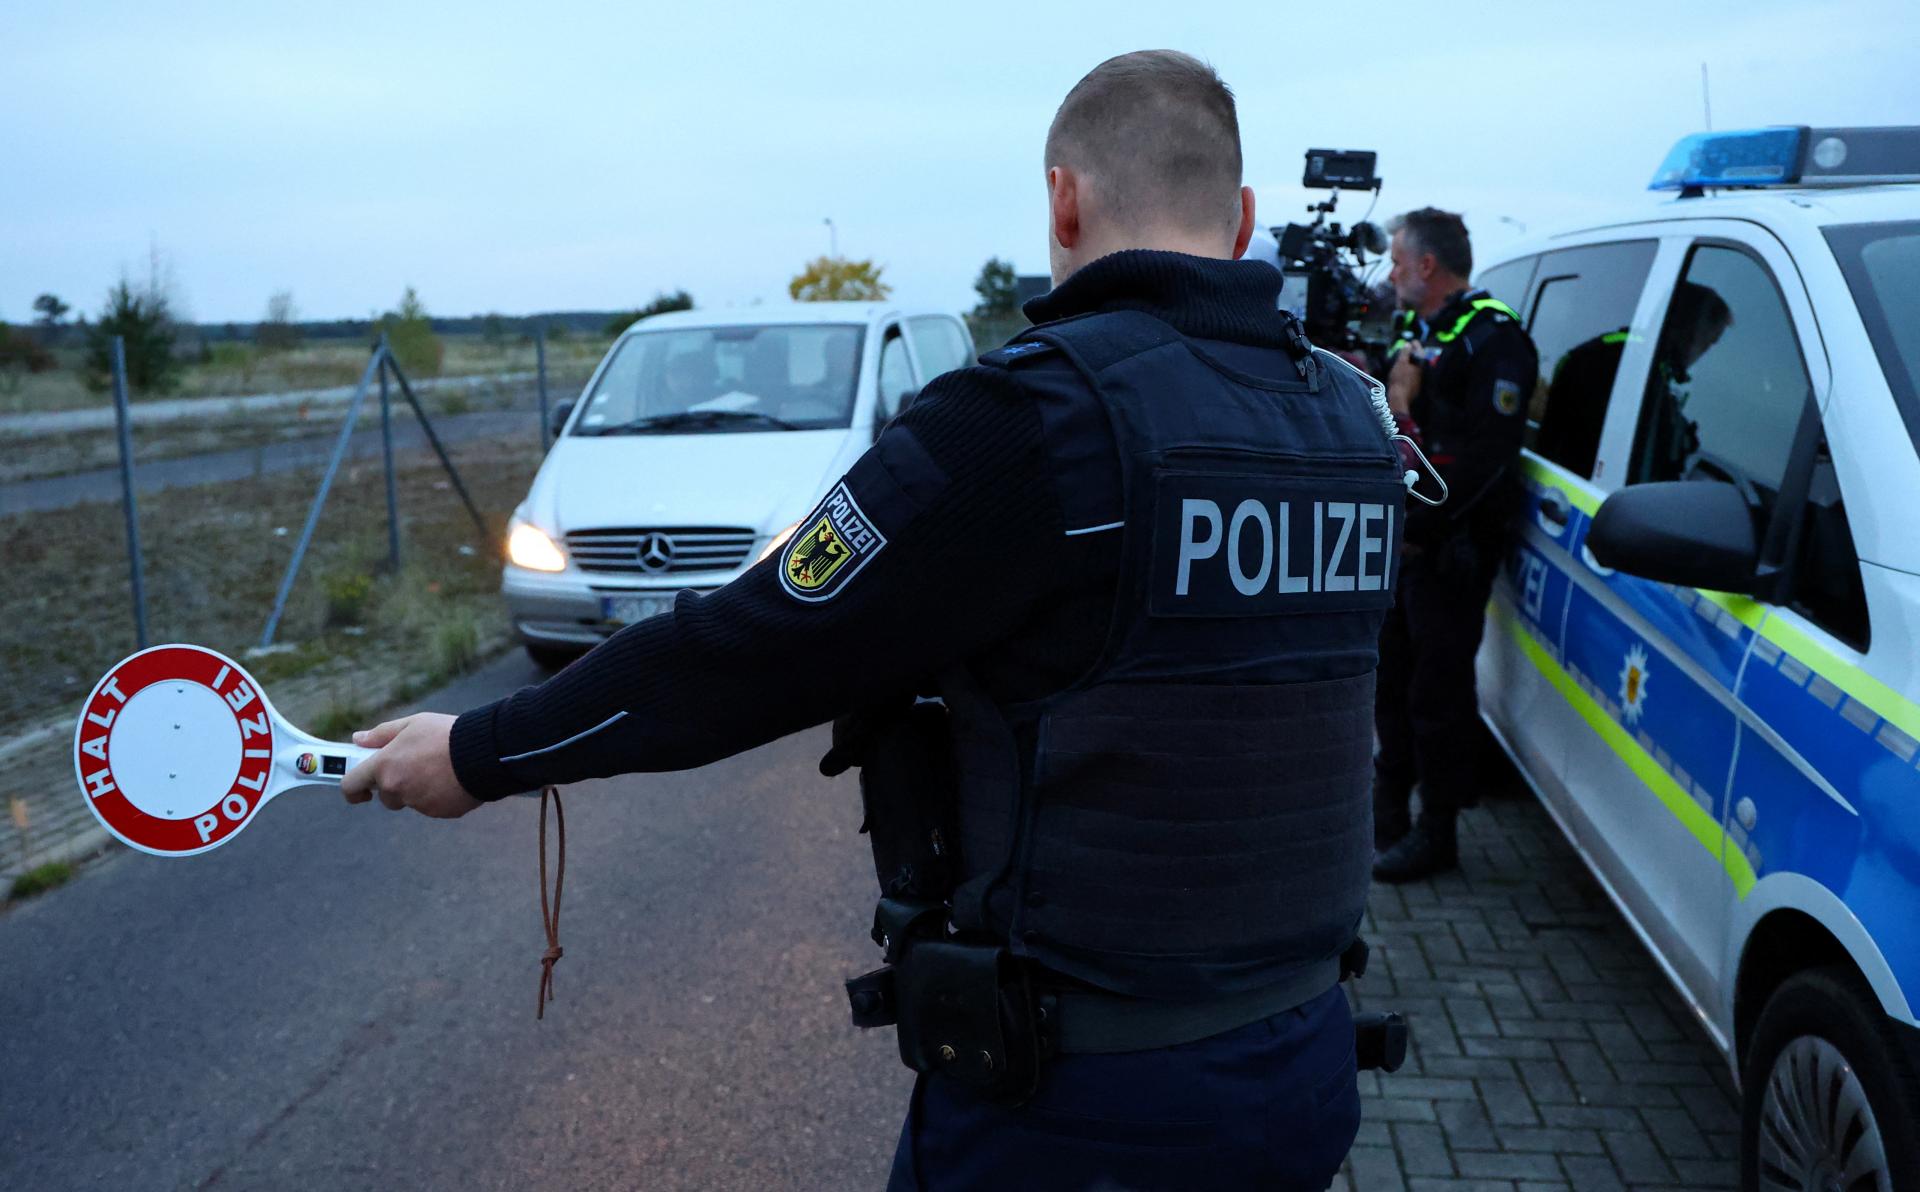 Nemecko nechá kontroly na hraniciach s Českom a ďalšími štátmi, Scholz sa zhodol regiónmi